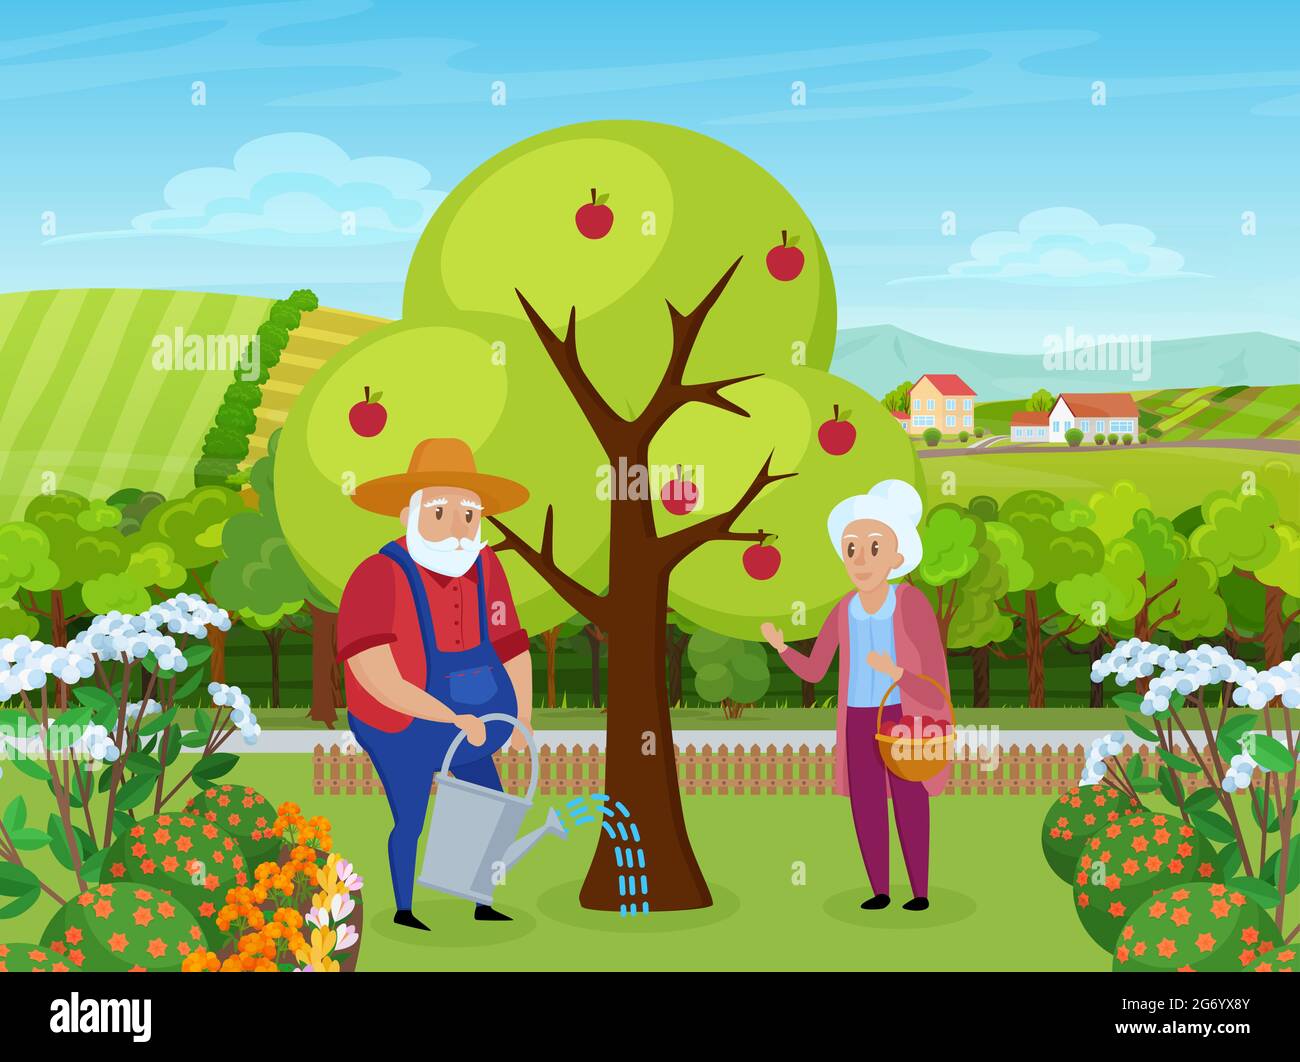 Ältere Paar Menschen arbeiten in Bauernhof Garten Vektor-Illustration. Cartoon Senior Mann Figur in Hut arbeiten, halten Gießkanne, um Apfelbaum zu gießen, Frau mit Korb mit Früchten Hintergrund stehen Stock Vektor